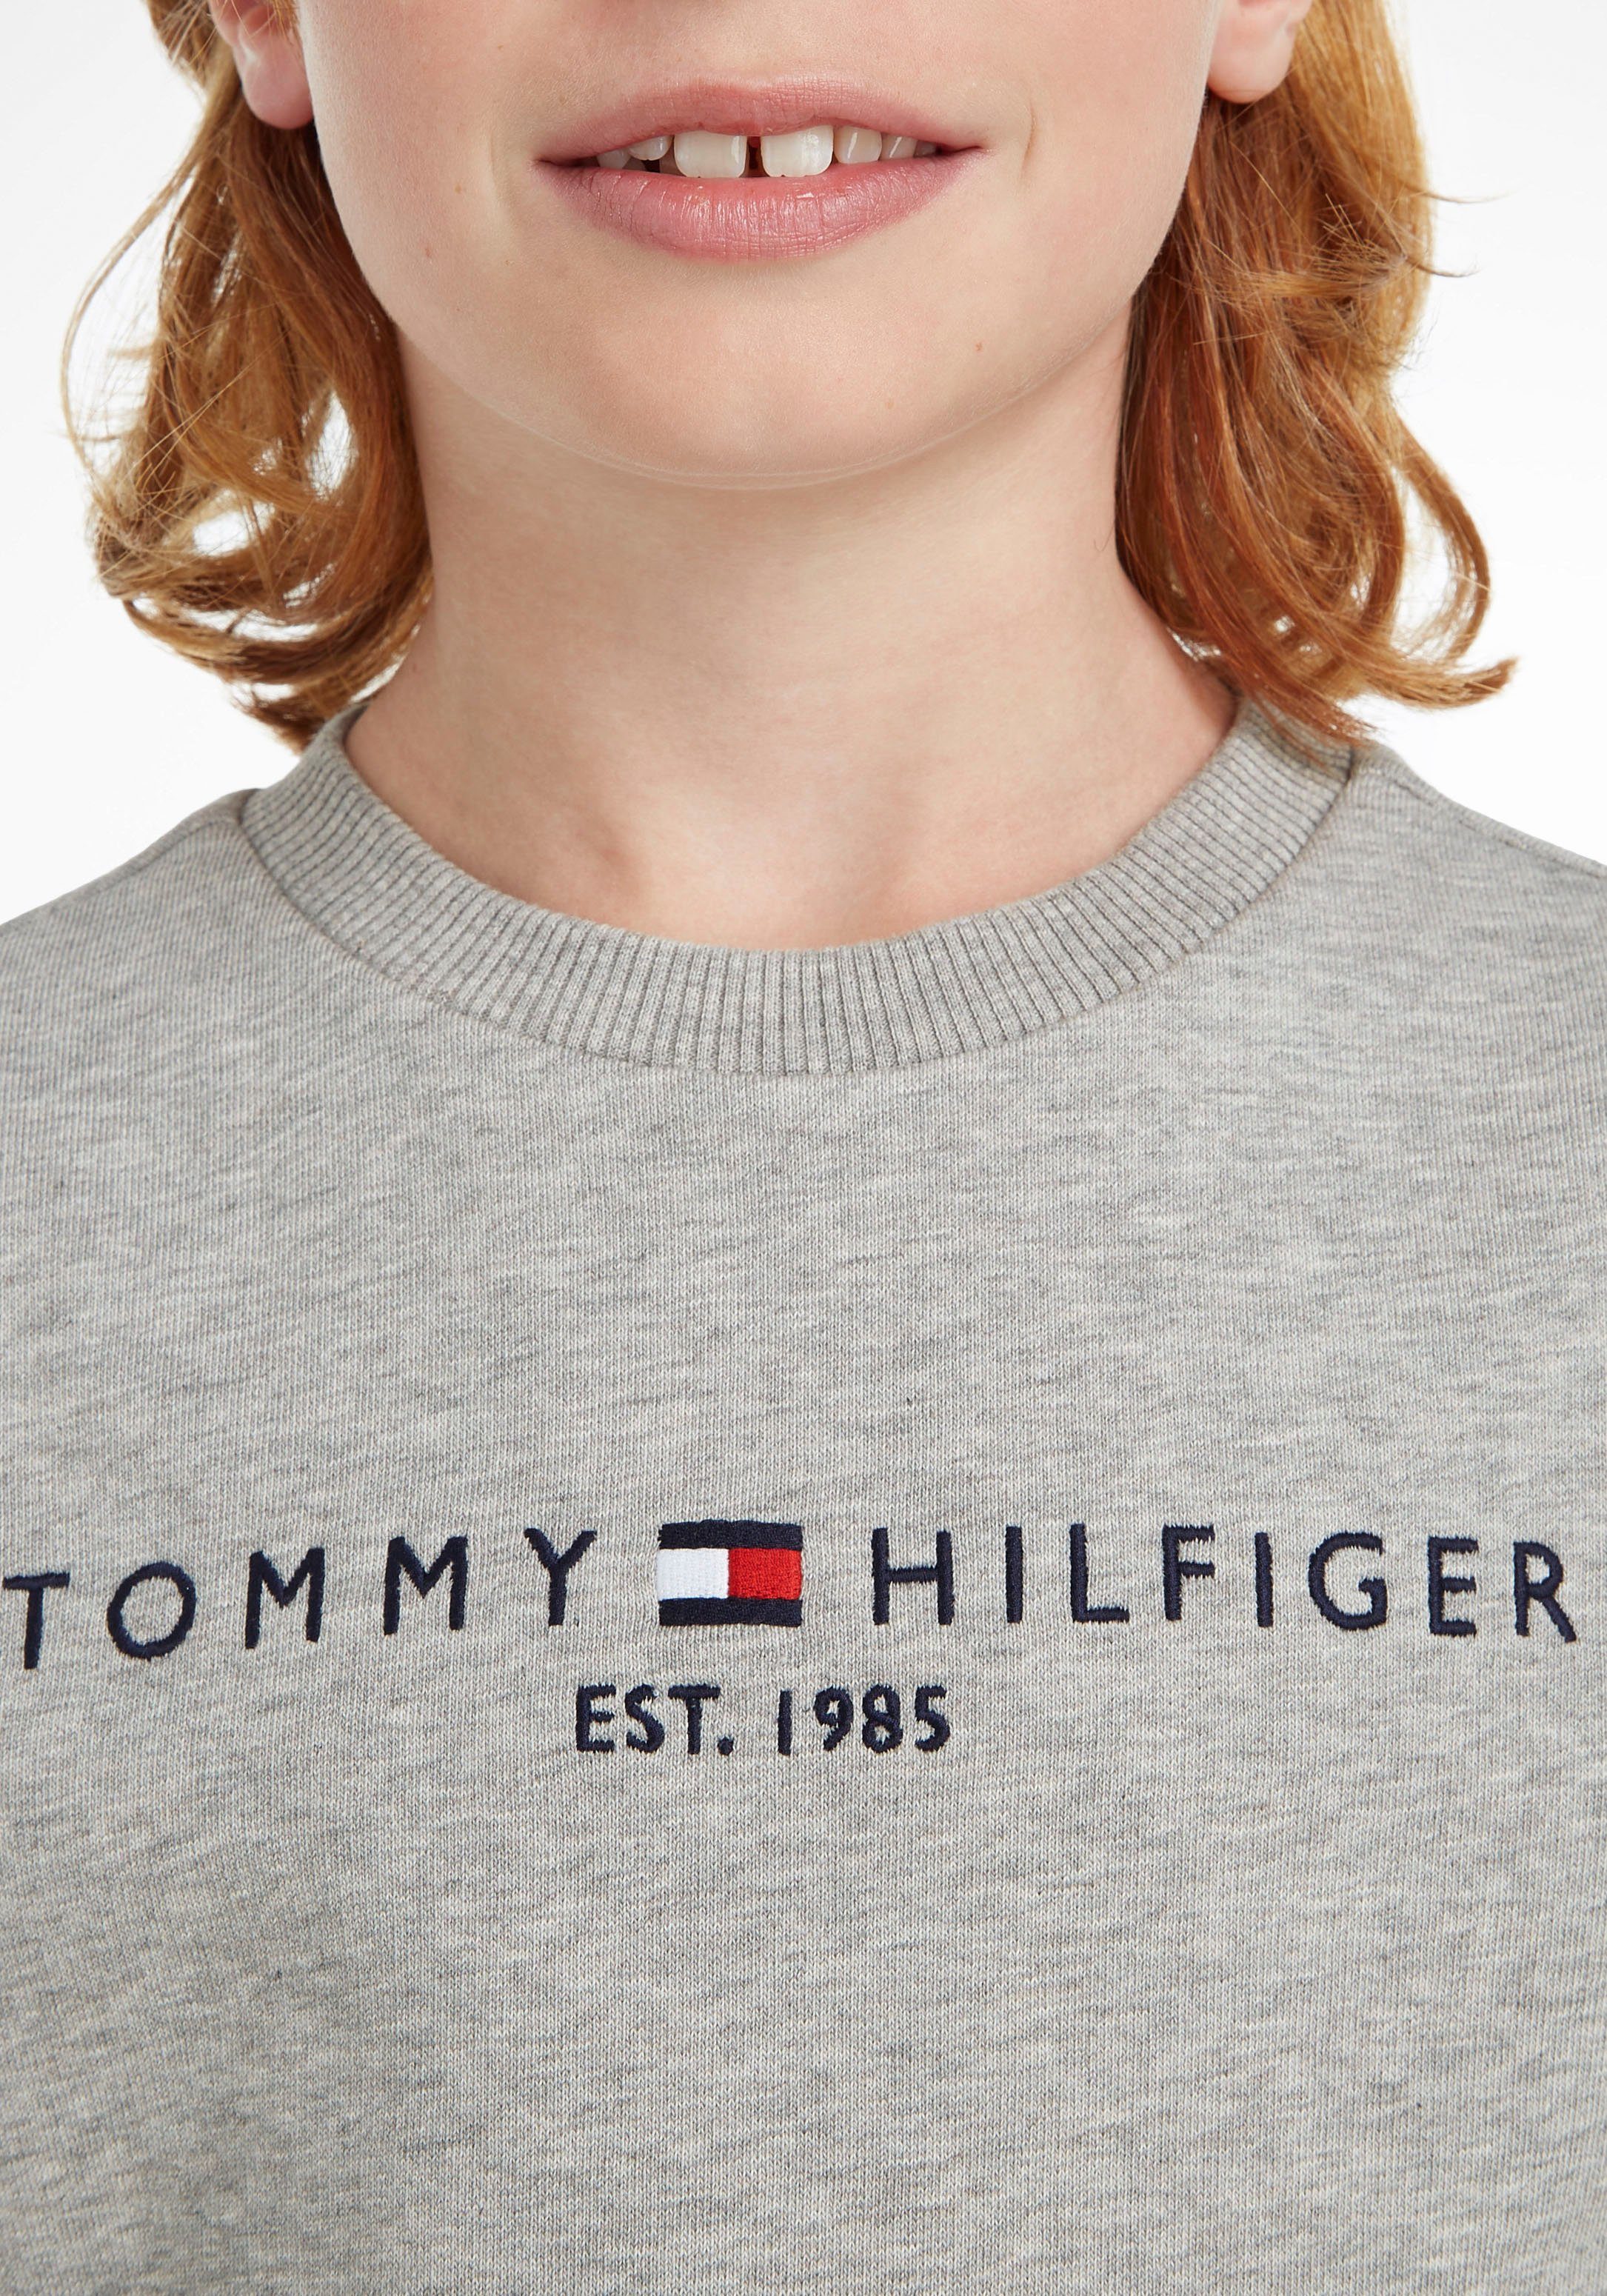 ESSENTIAL Jungen Sweatshirt Hilfiger Tommy MiniMe,für Kinder SWEATSHIRT Mädchen Junior Kids und